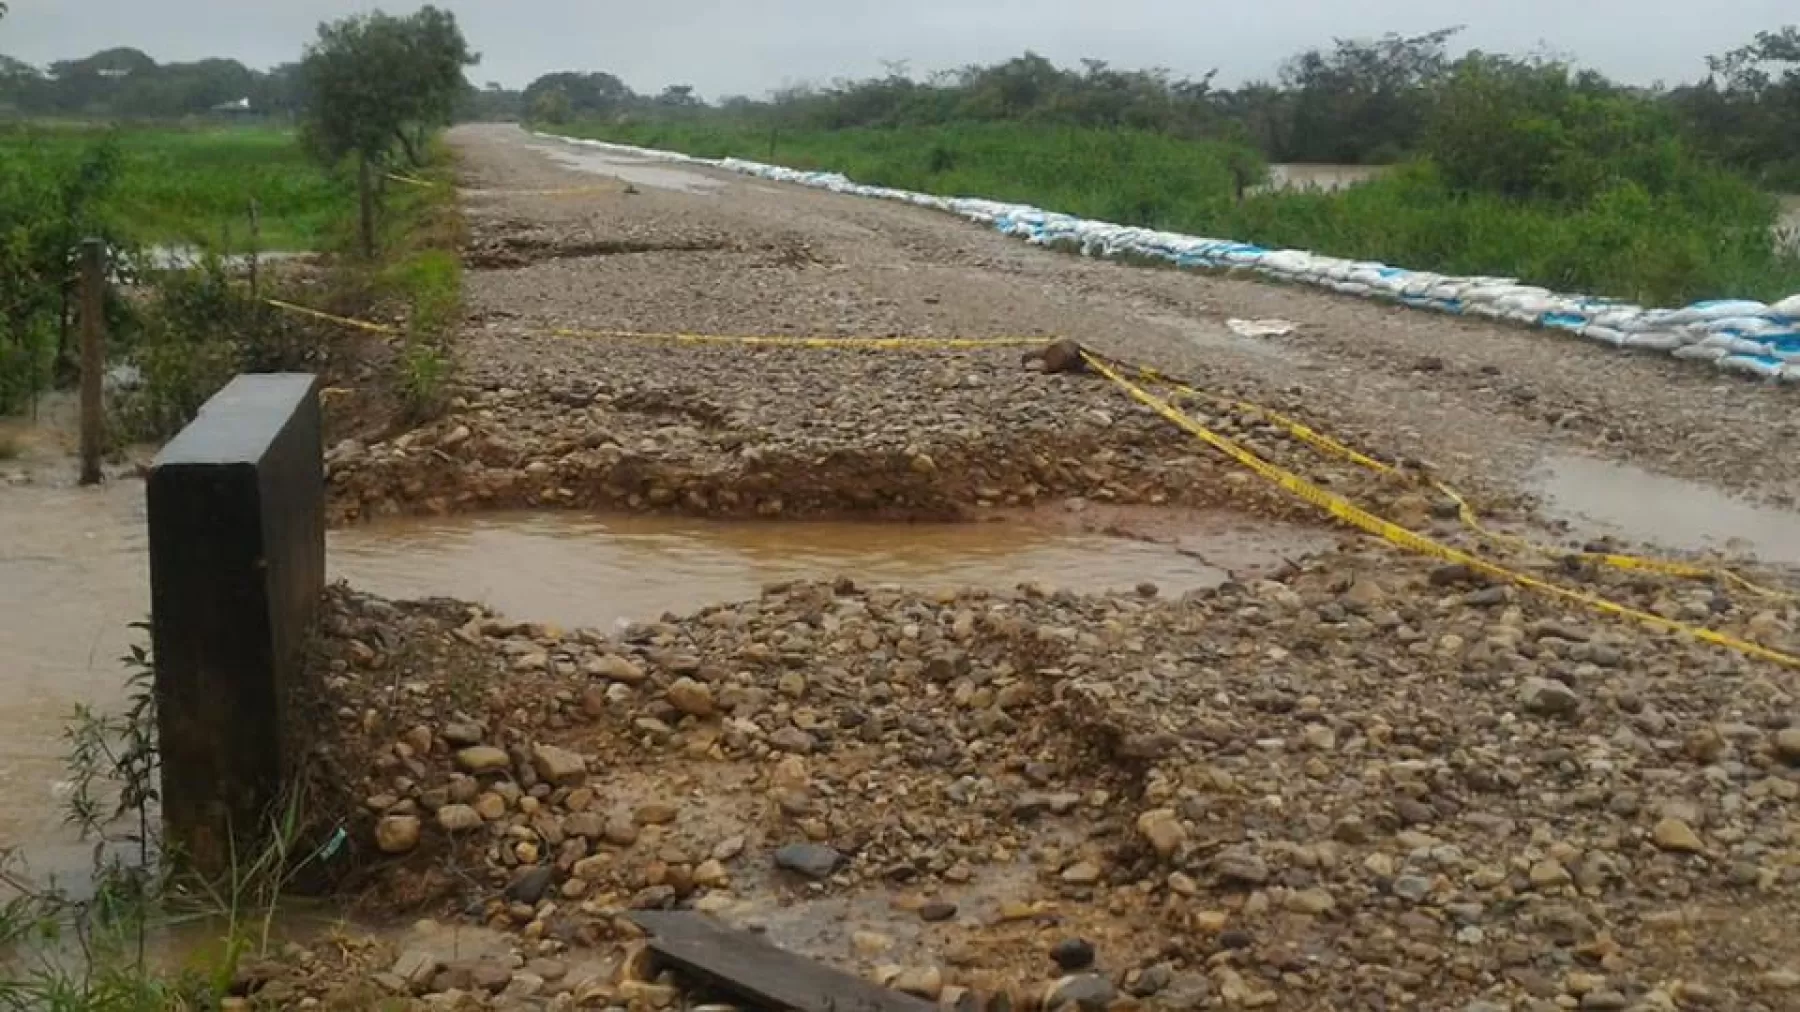 Corporinoquia adelanta procesos sancionatorios contra responsables del problema generado en la cuenca del Caño El Plato en la vía Tame - Puerto Rondón.